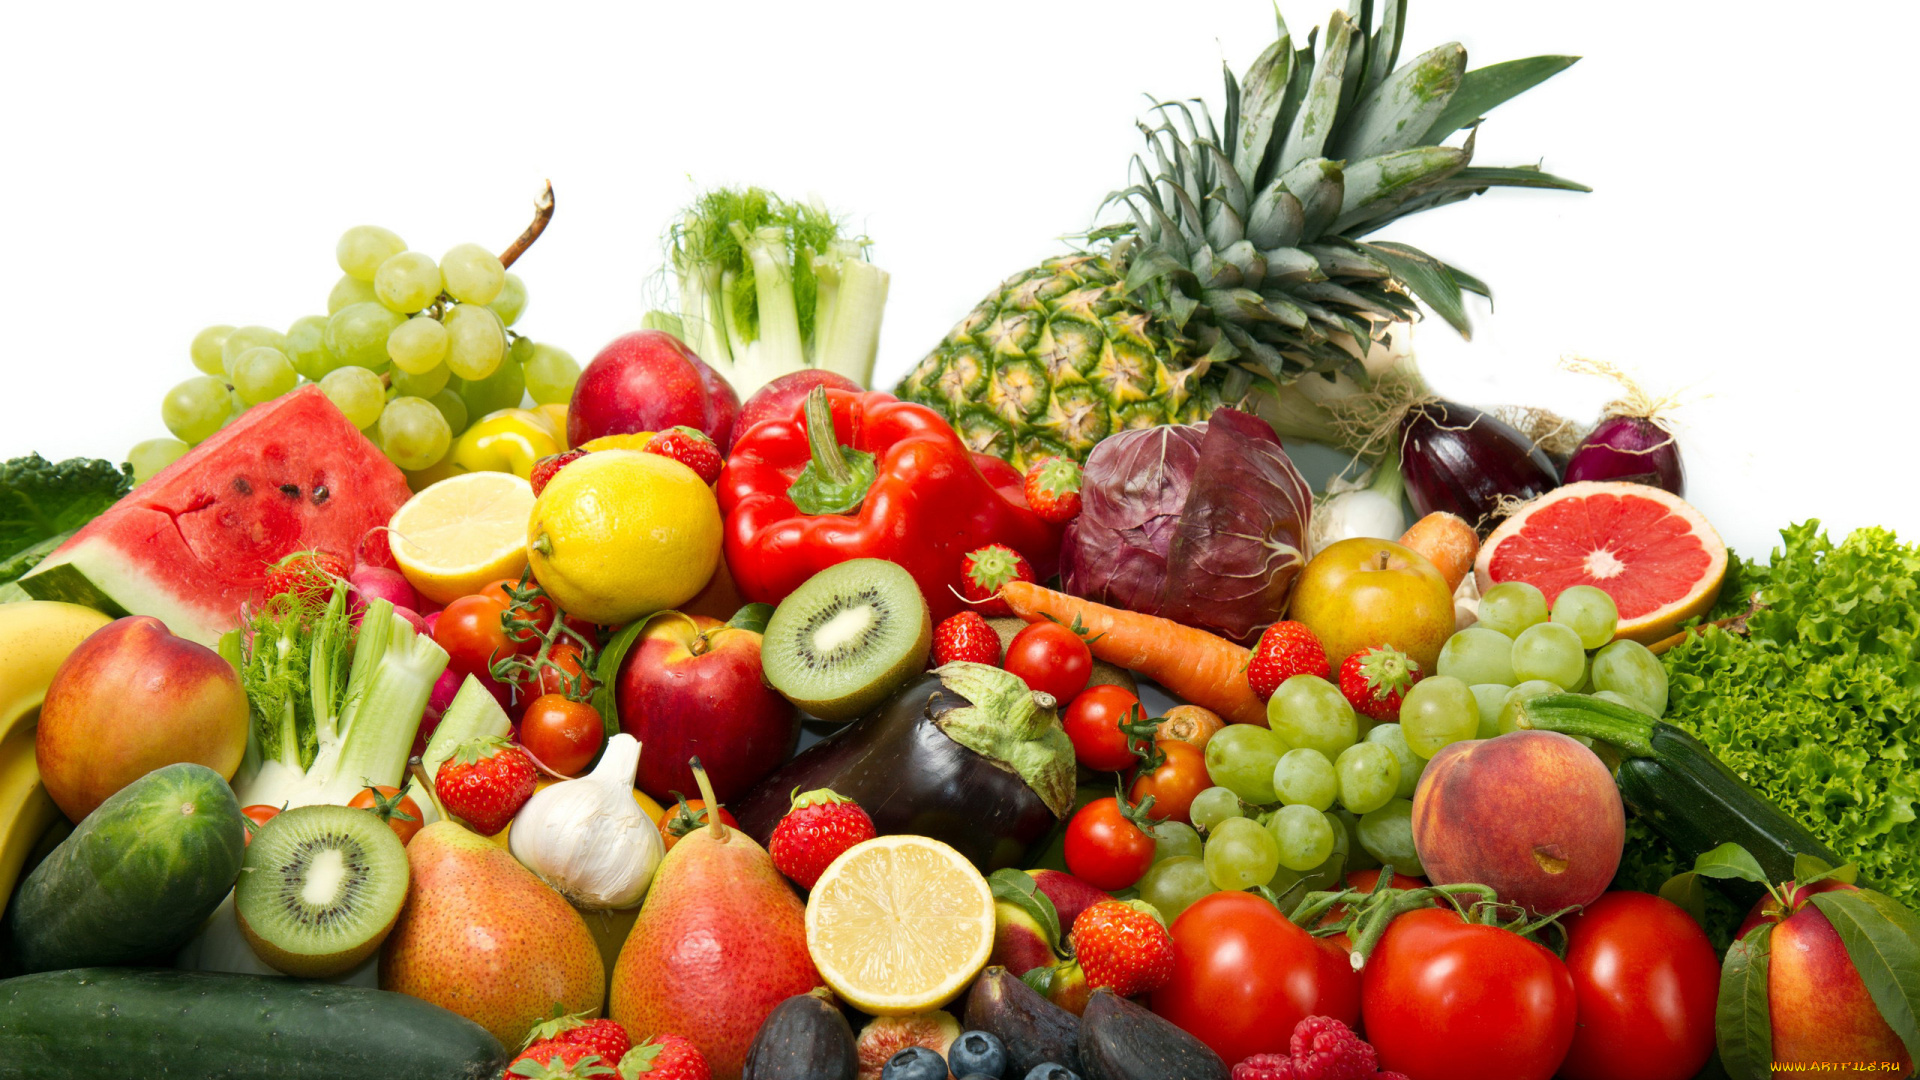 еда, фрукты, и, овощи, вместе, виноград, арбуз, ананас, капуста, перец, помидоры, огурцы, томаты, груши